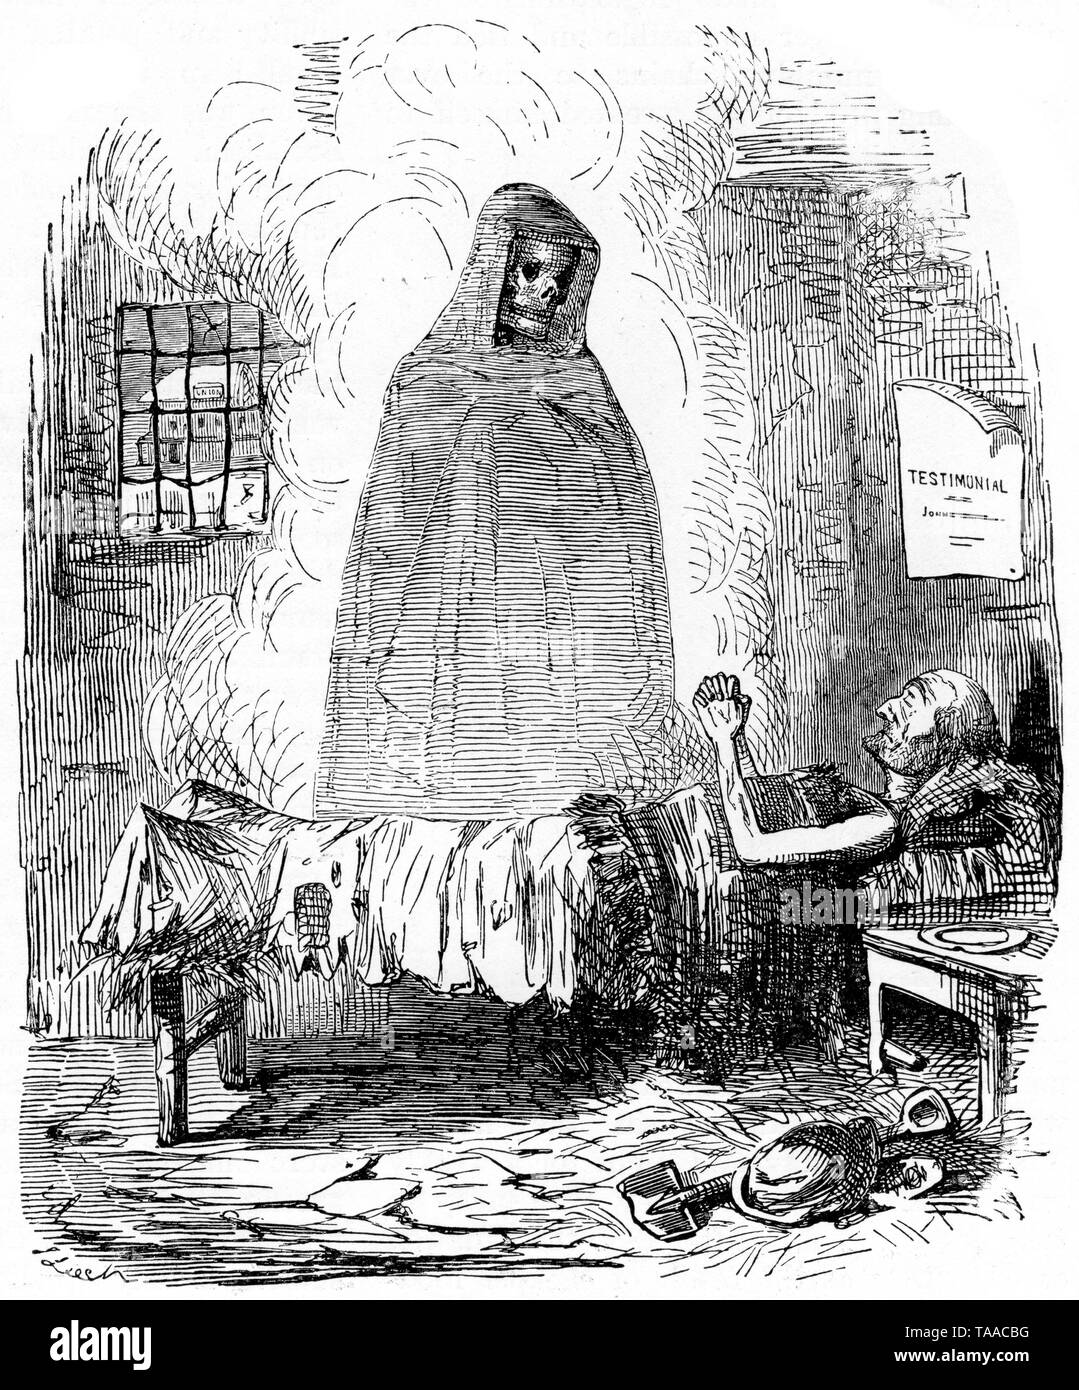 Der Freund des armen Mannes (die hungrigen vierziger Jahre), 1845. Ein 'Punch', Karikatur von John Leech. Leech zeigt den Tod als Freund der Alten, Kranken, Arbeitslosen und Unterprivilegierten. Er zeigt den Tod als bevorzugte Option für das Workhouse. Stockfoto